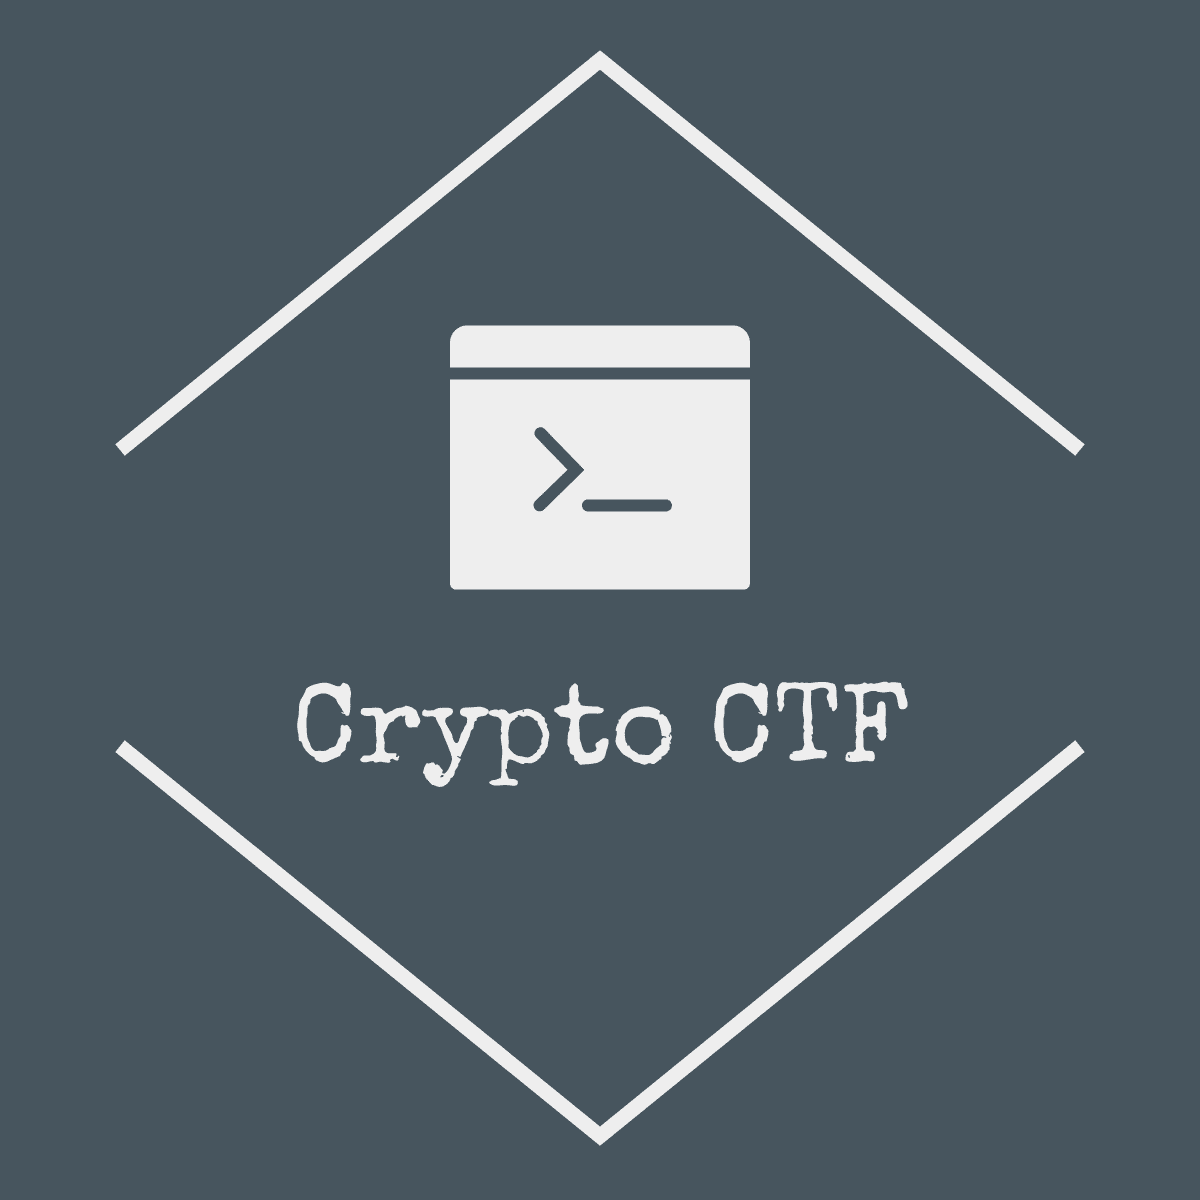 ctf crypto write up